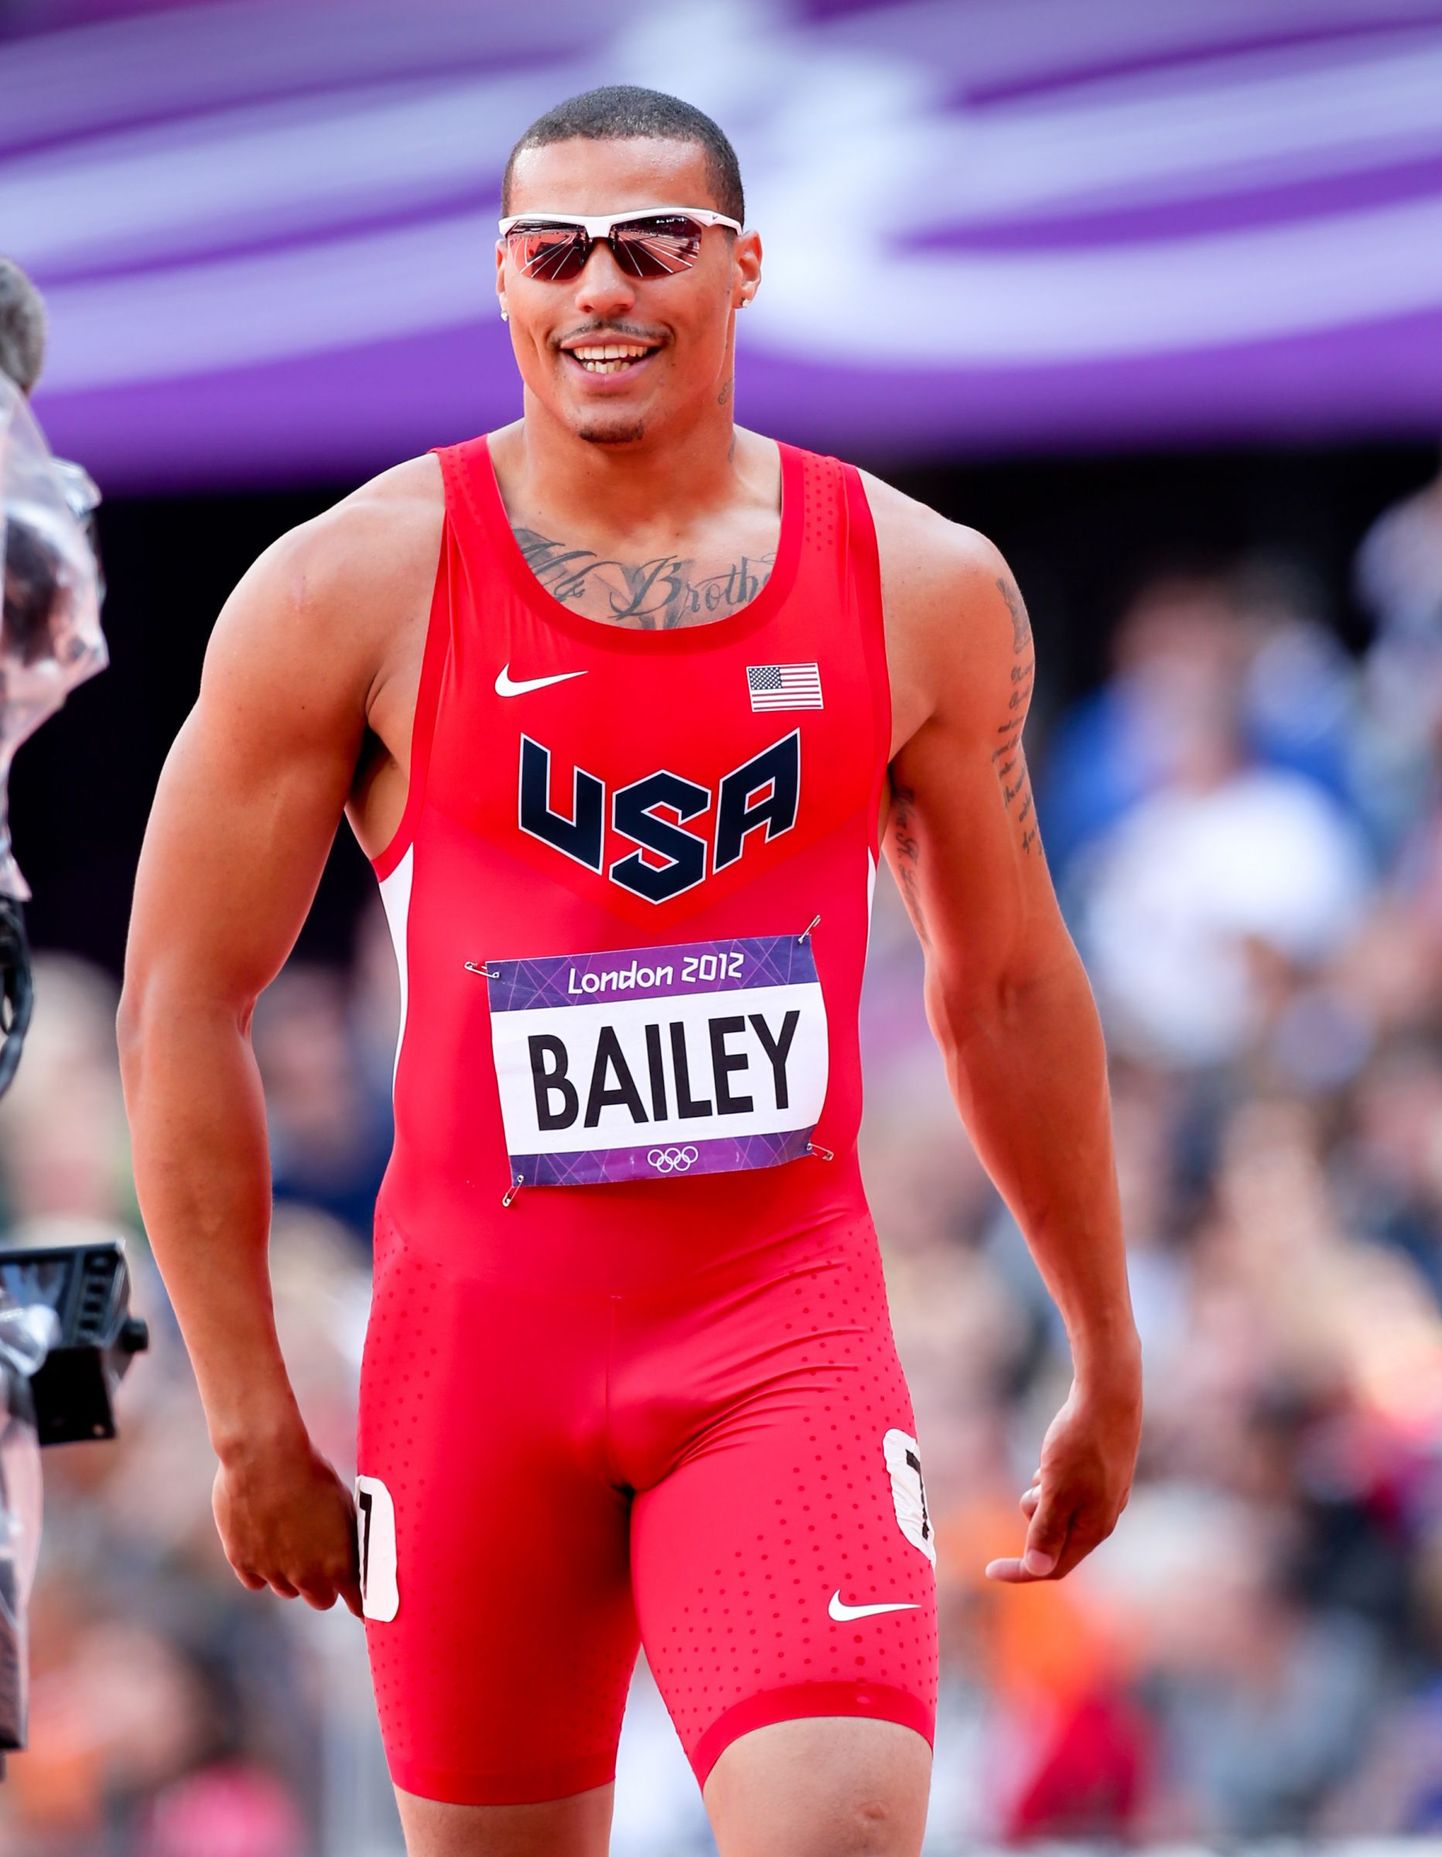 Enne bobisõiduga tegelema hakkamist 2016. aastal oli Bailey tippsprinter - 2012. aasta Londoni olümpial sai ta meeste 100 meetri jooksus 9,88-ga neljanda koha.